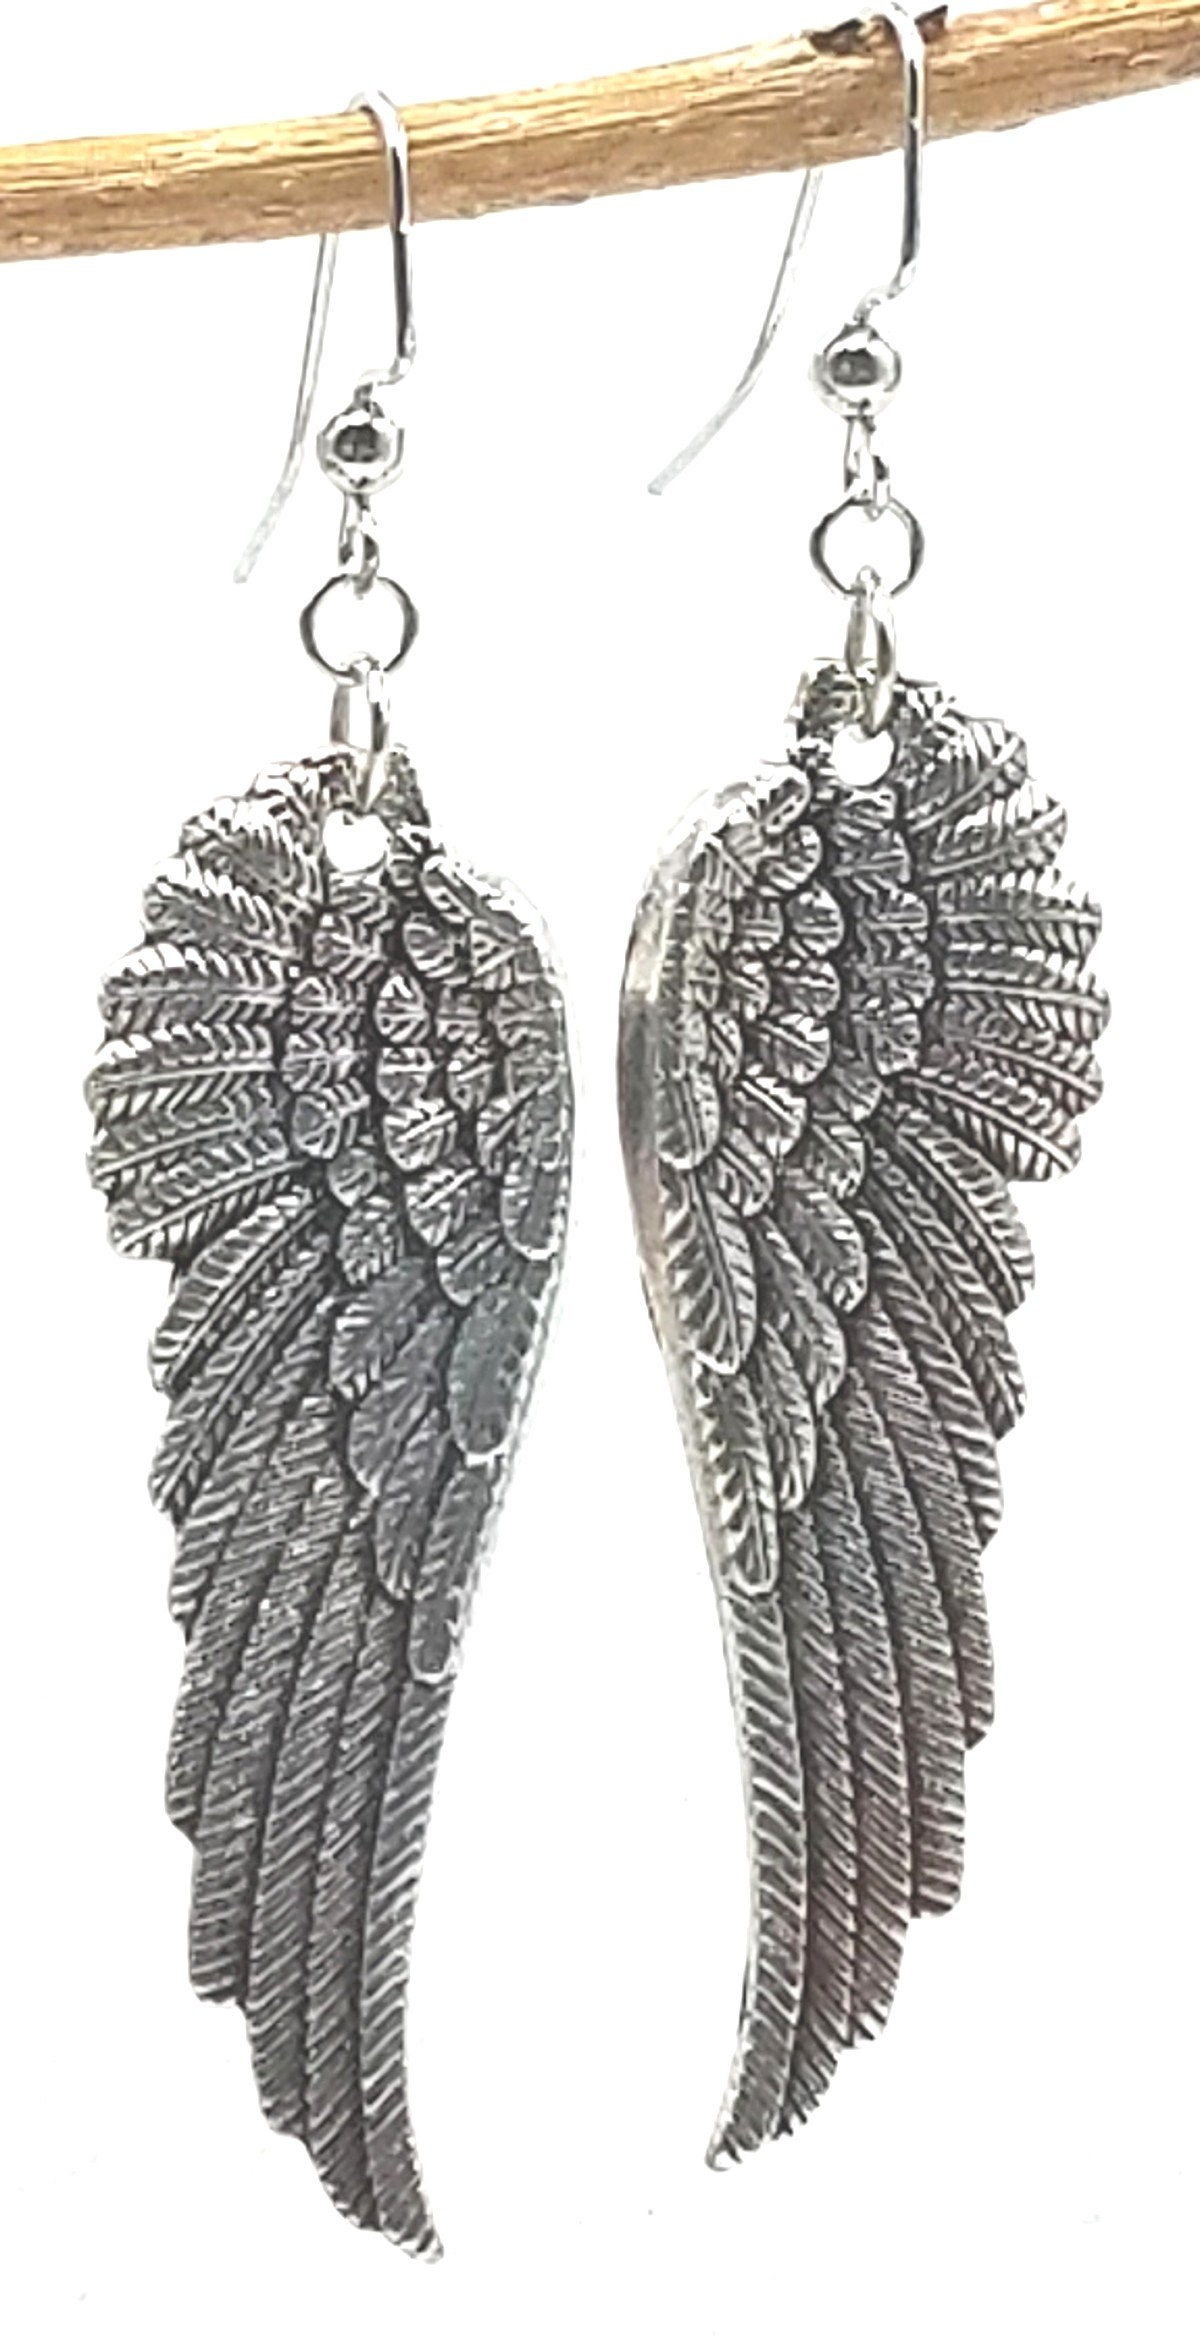 Wings Earrings Silver Wings Earrings Freedom Earrings - Etsy